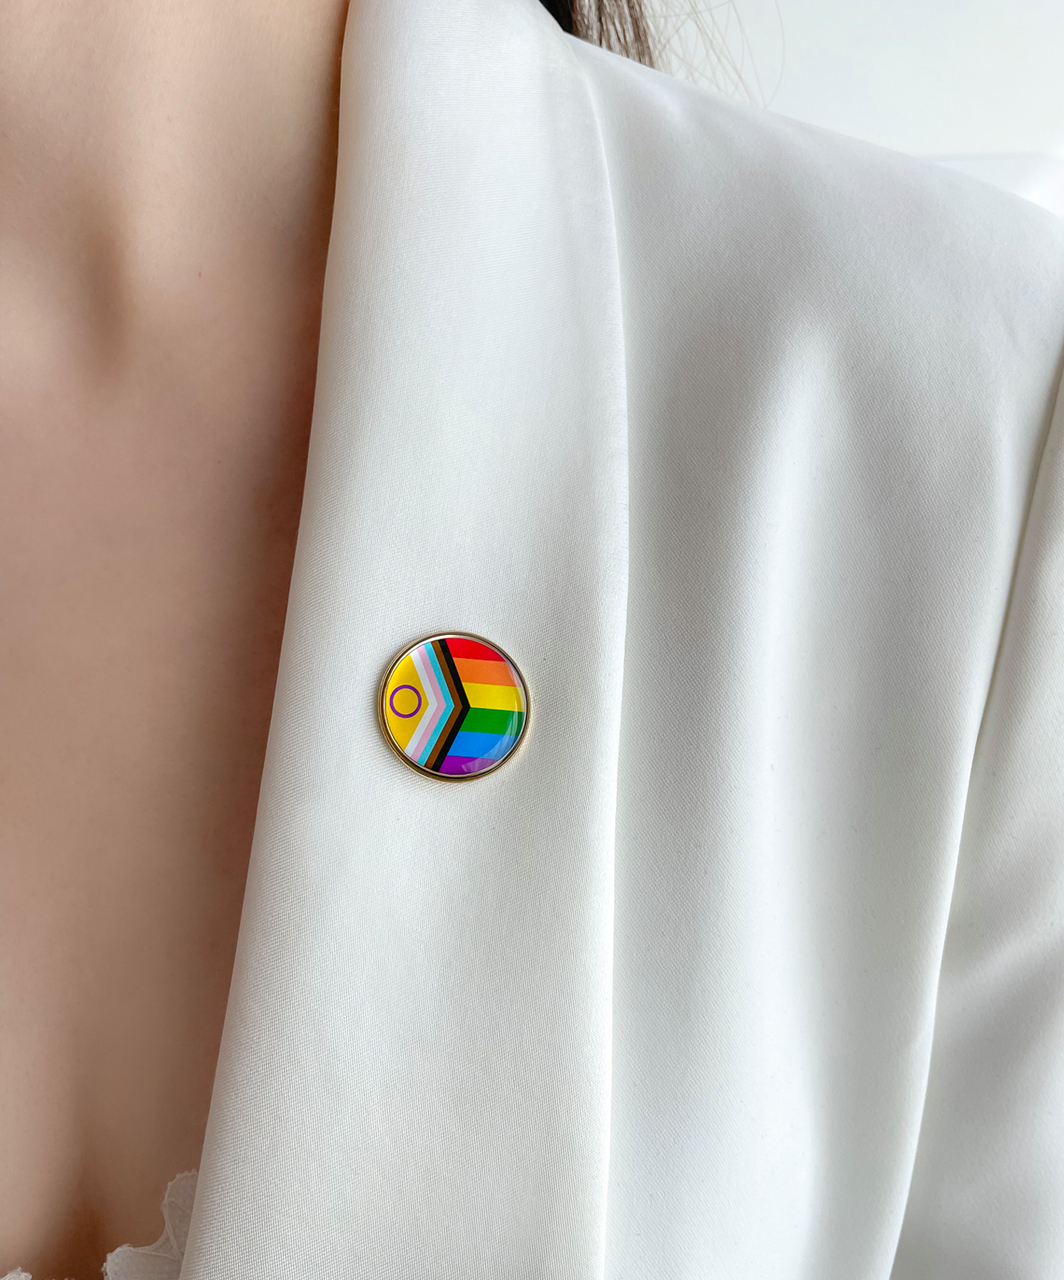 Rainbow Pride apvalus ženkliukas su emaliu lakuota LGBT pažangos vėliava